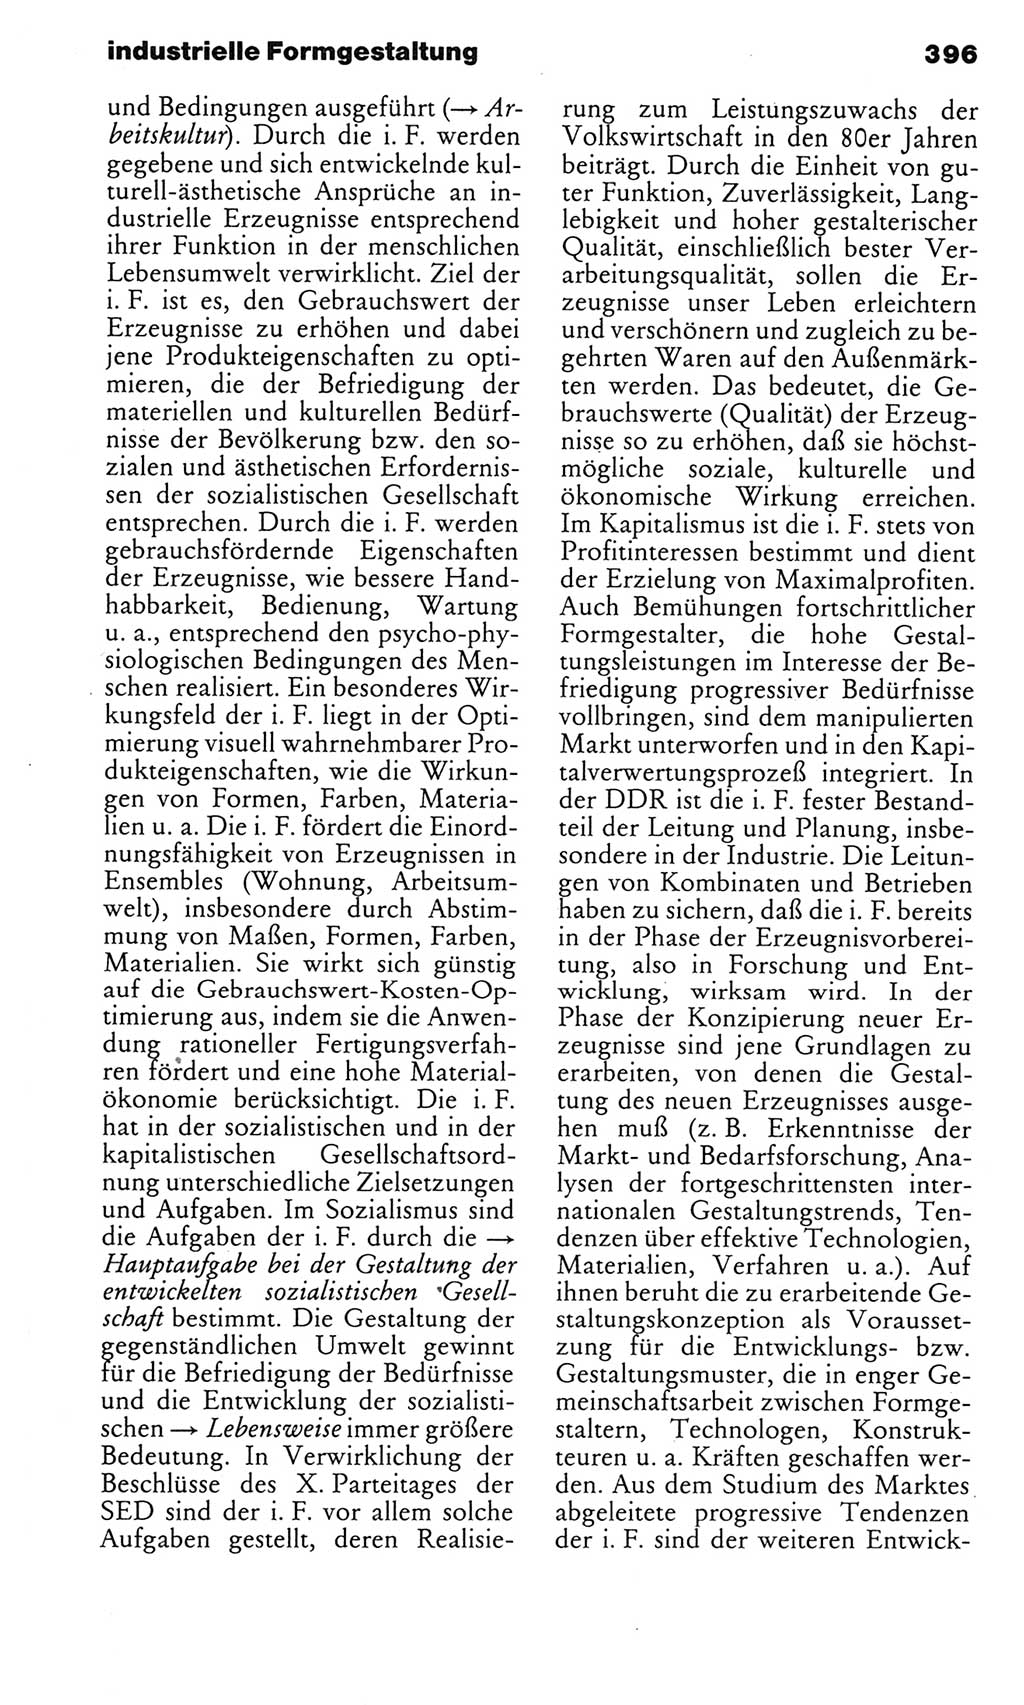 Kleines politisches Wörterbuch [Deutsche Demokratische Republik (DDR)] 1985, Seite 396 (Kl. pol. Wb. DDR 1985, S. 396)